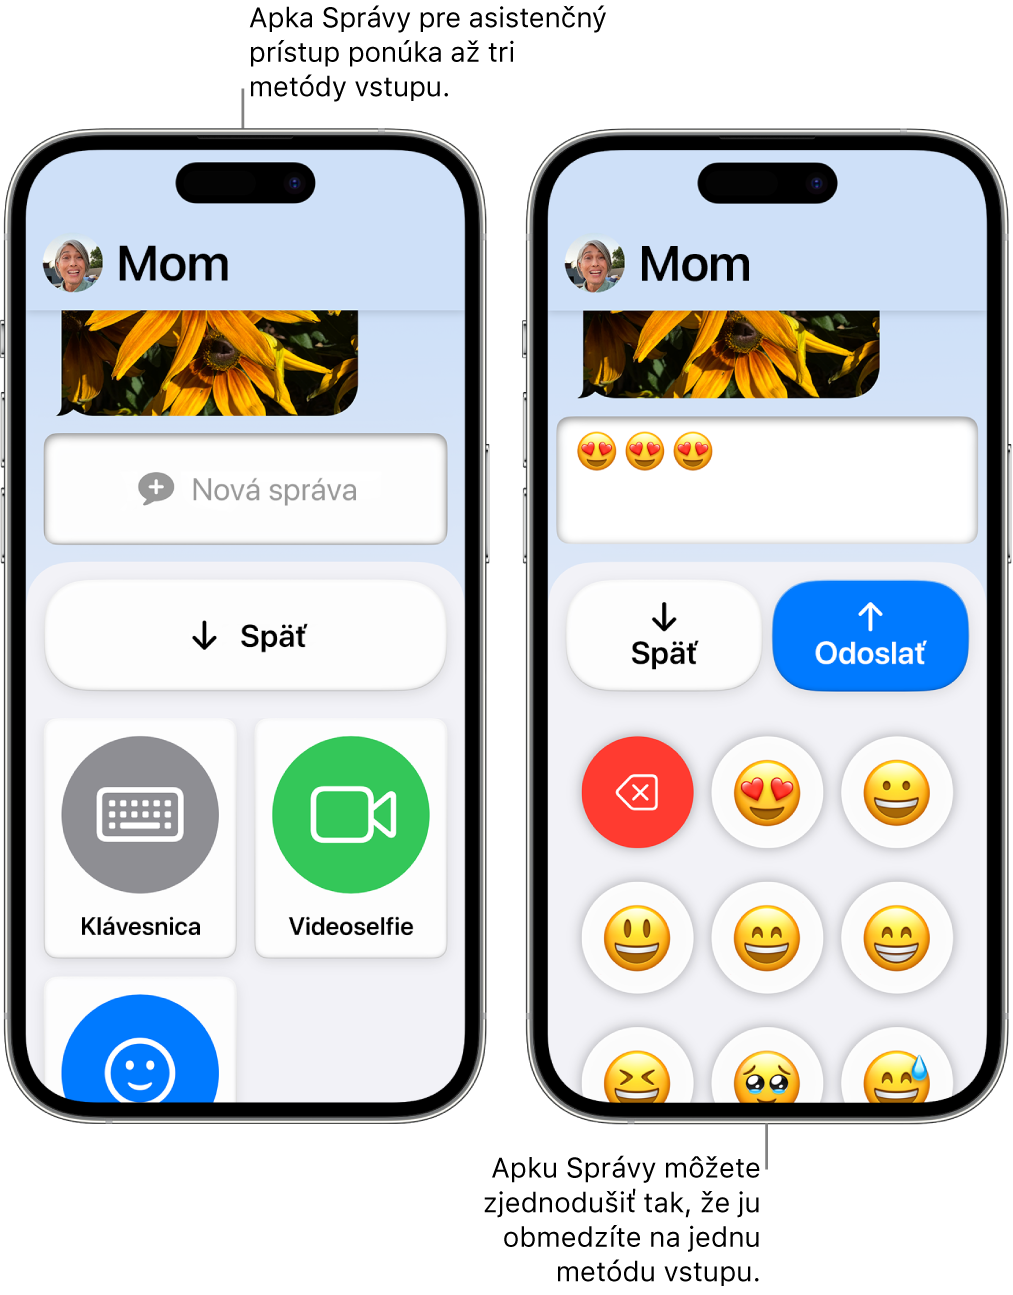 Dva iPhony v režime asistenčného prístupu. Na jednom iPhone sa zobrazuje apka Správy so vstupnými metódami, ktoré si užívateľ môže vybrať, ako napríklad Klávesnica alebo Videoselfie. Na druhom sa zobrazuje správa odosielaná pomocou klávesnice, ktorá obsahuje iba emoji.